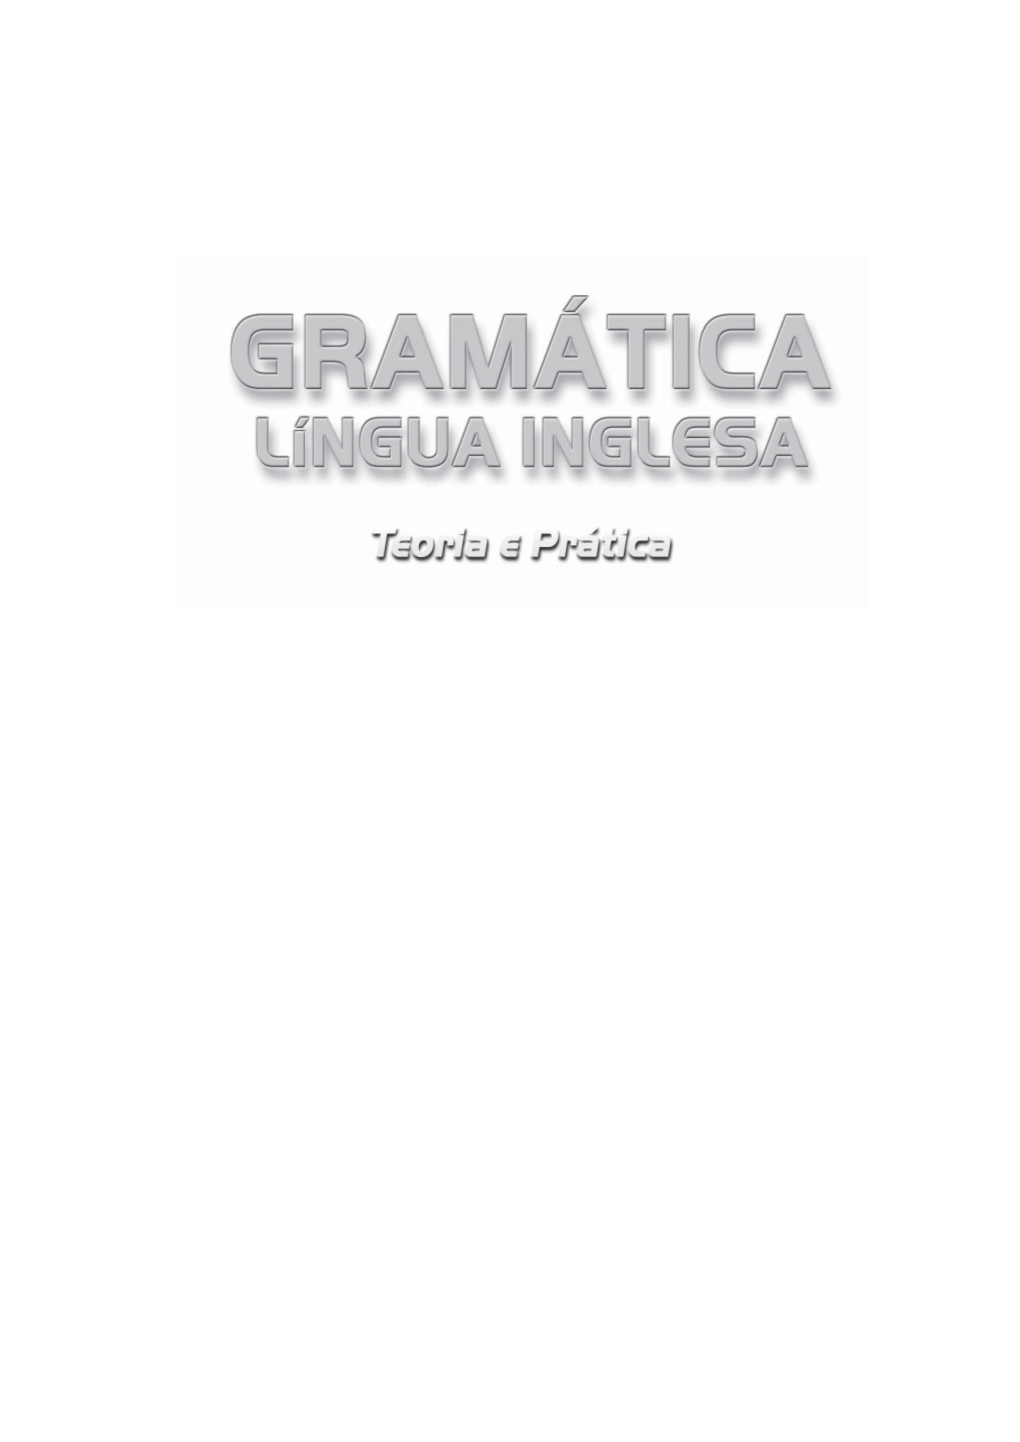 7 Linguainglesa.Gramatica.Pdf